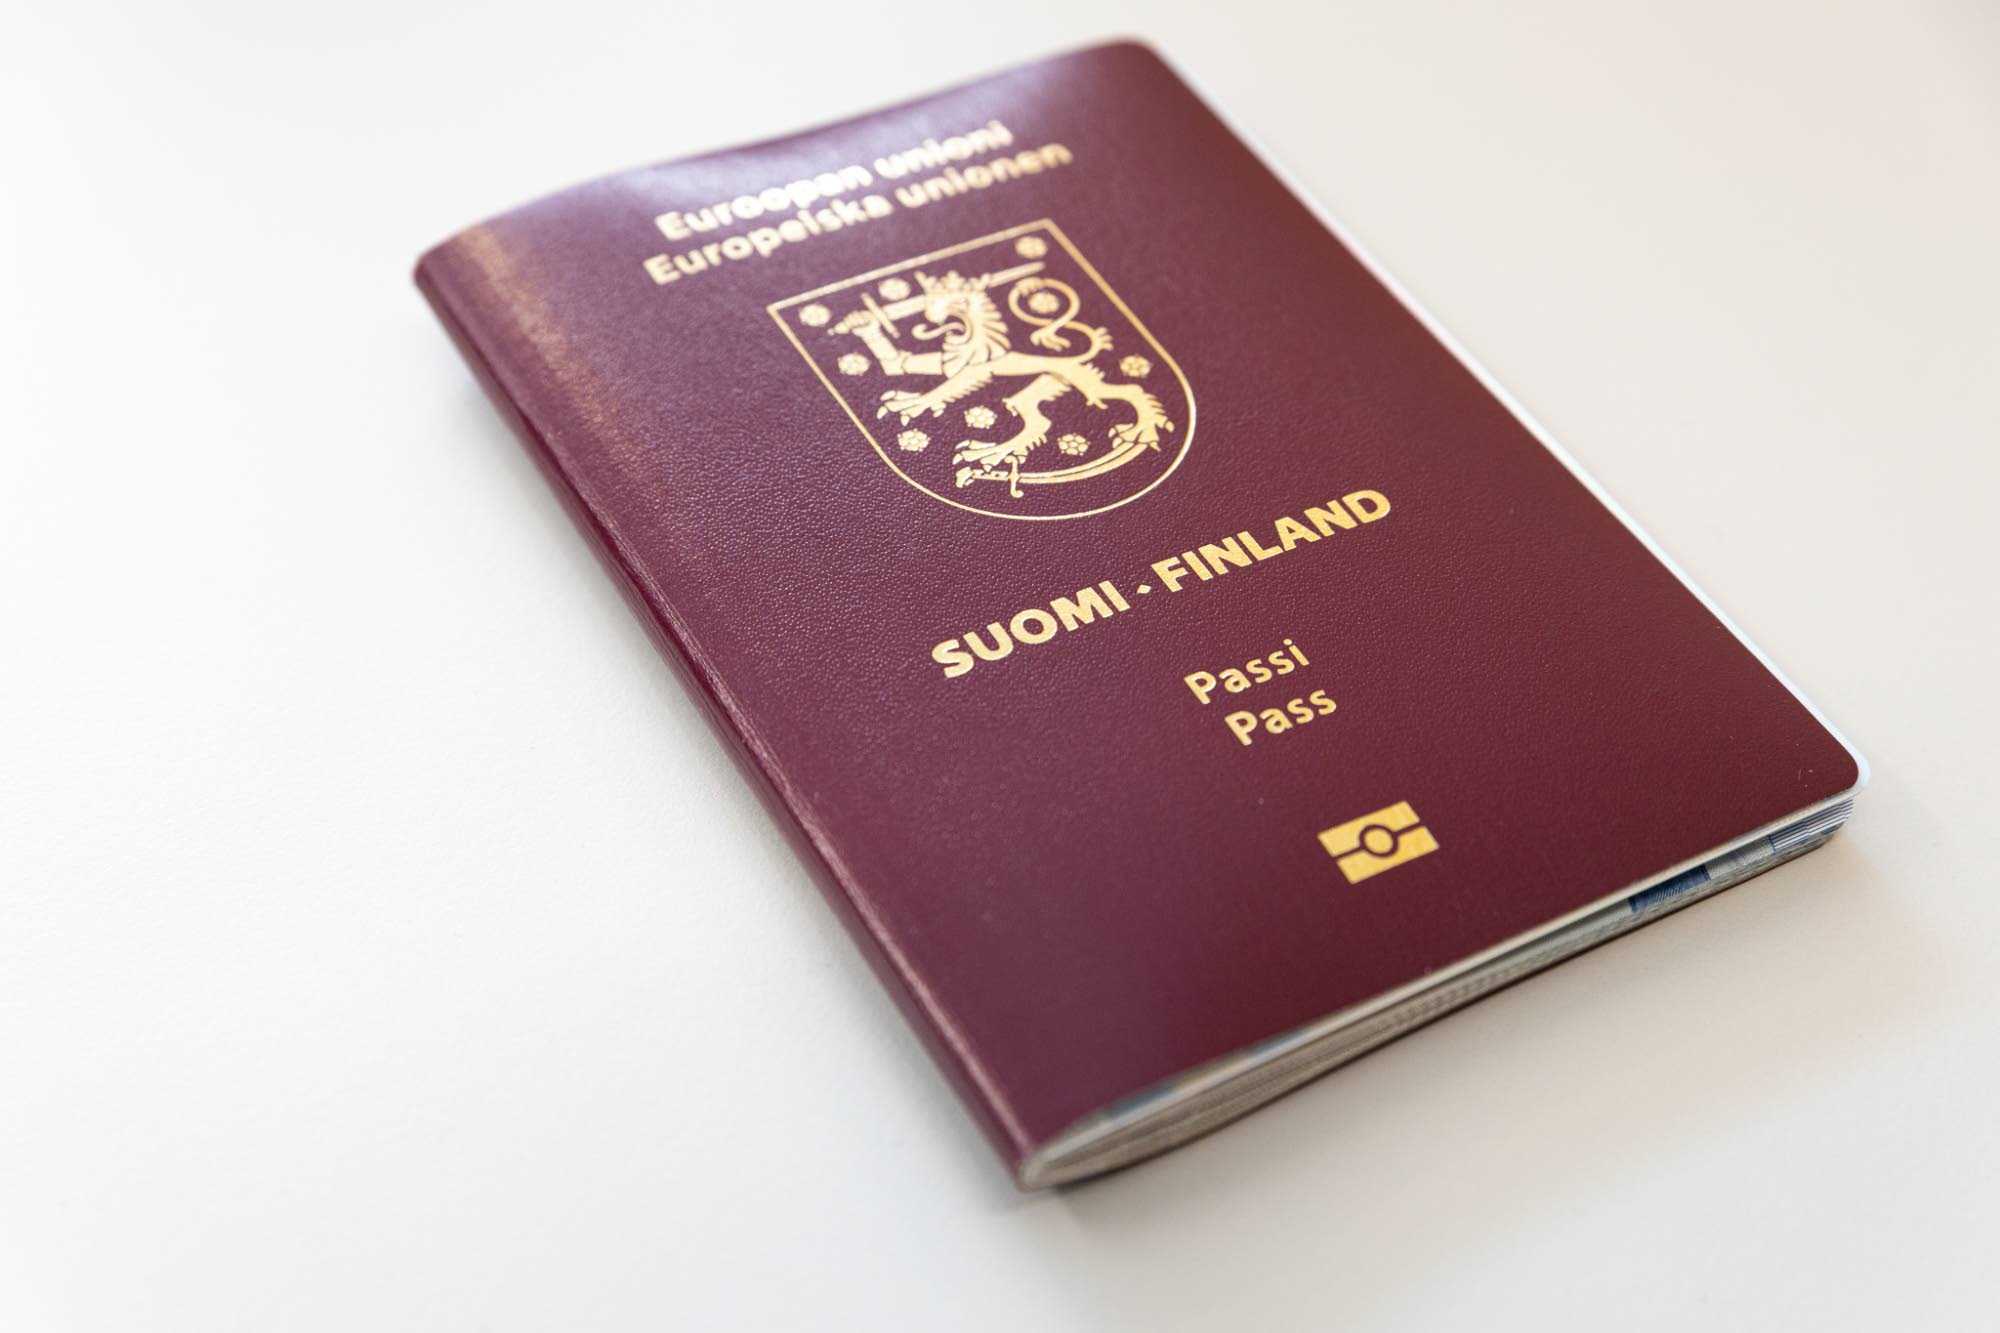  Bild av ett finskt pass.